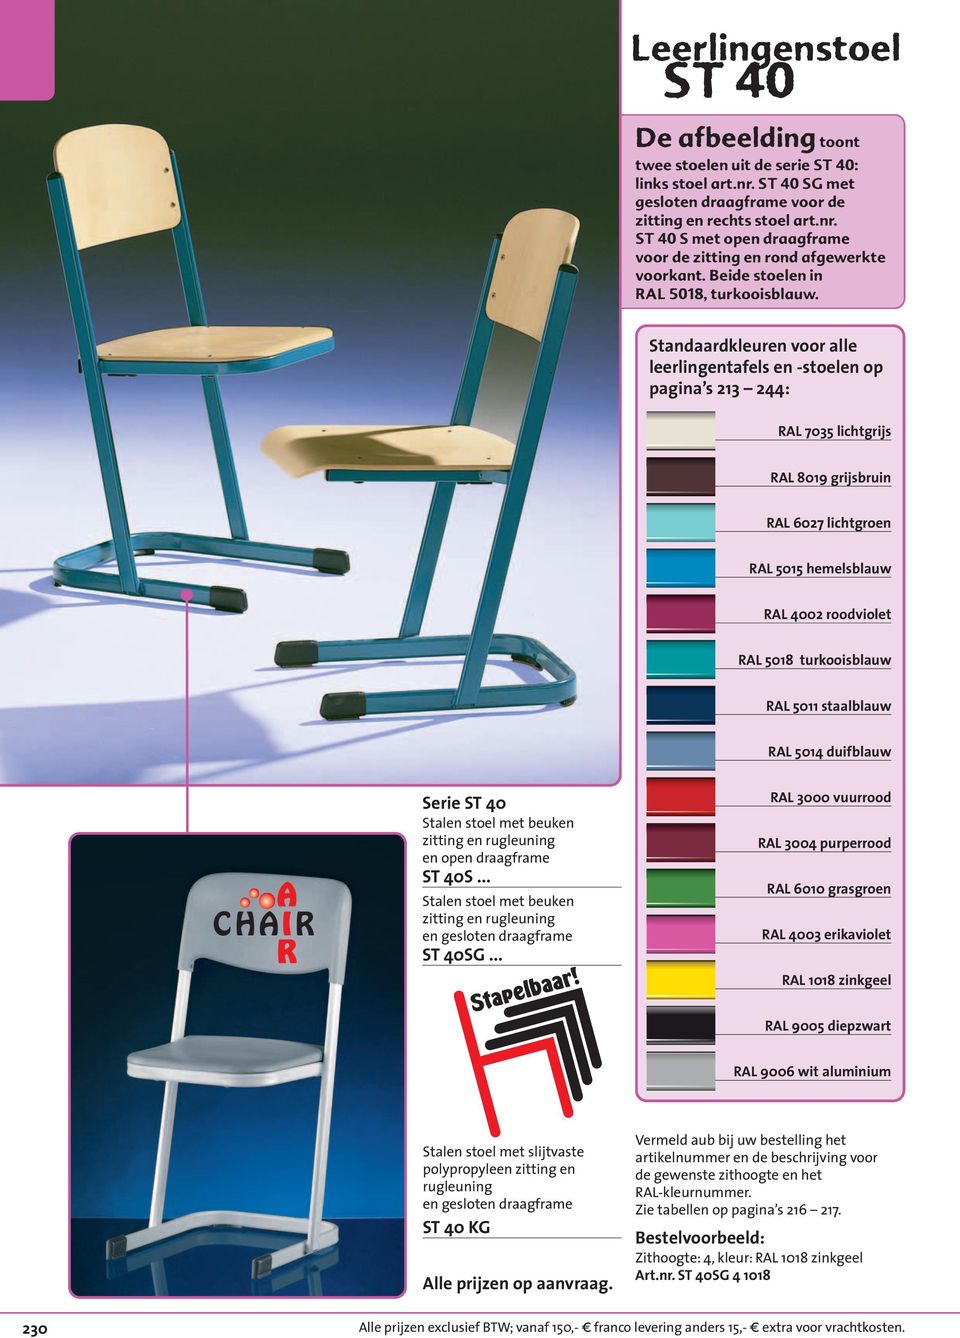 Standaardkleuren voor alle leerlingentafels en -stoelen op pagina s 213 244: RAL 7035 lichtgrijs RAL 8019 grijsbruin RAL 6027 lichtgroen RAL 5015 hemelsblauw RAL 4002 roodviolet RAL 5018